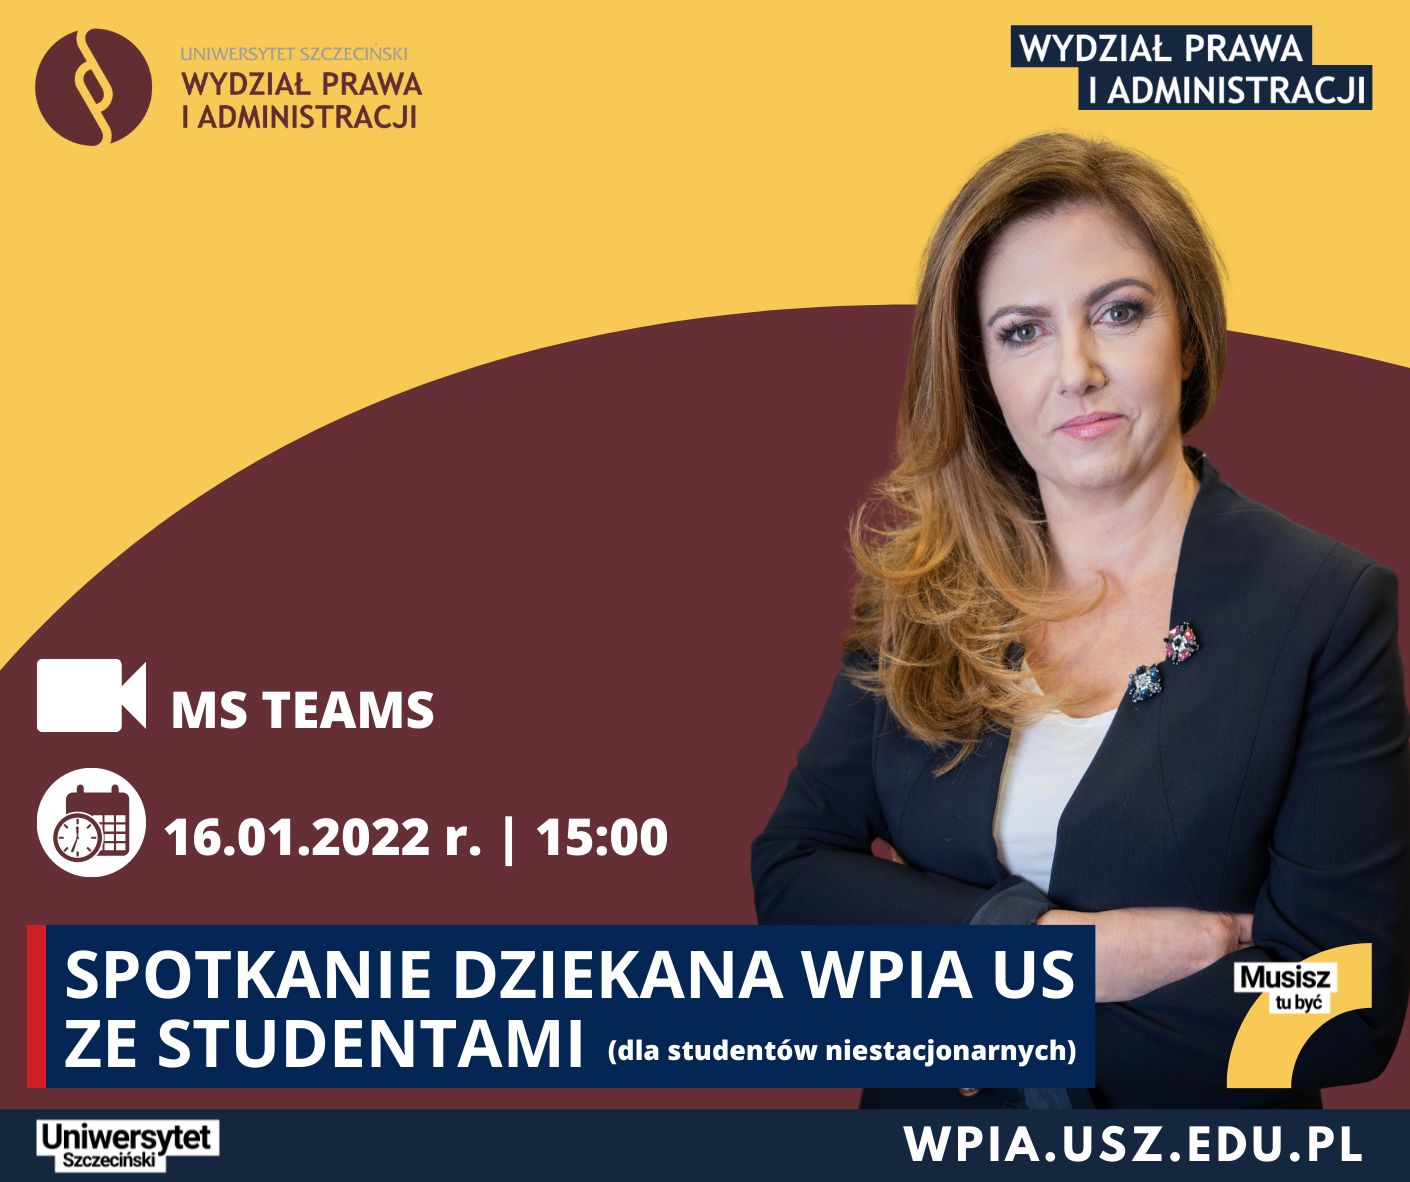 Spotkanie Dziekan WPiA US ze studentami studiów niestacjonarnych (16 I 2022 r.)